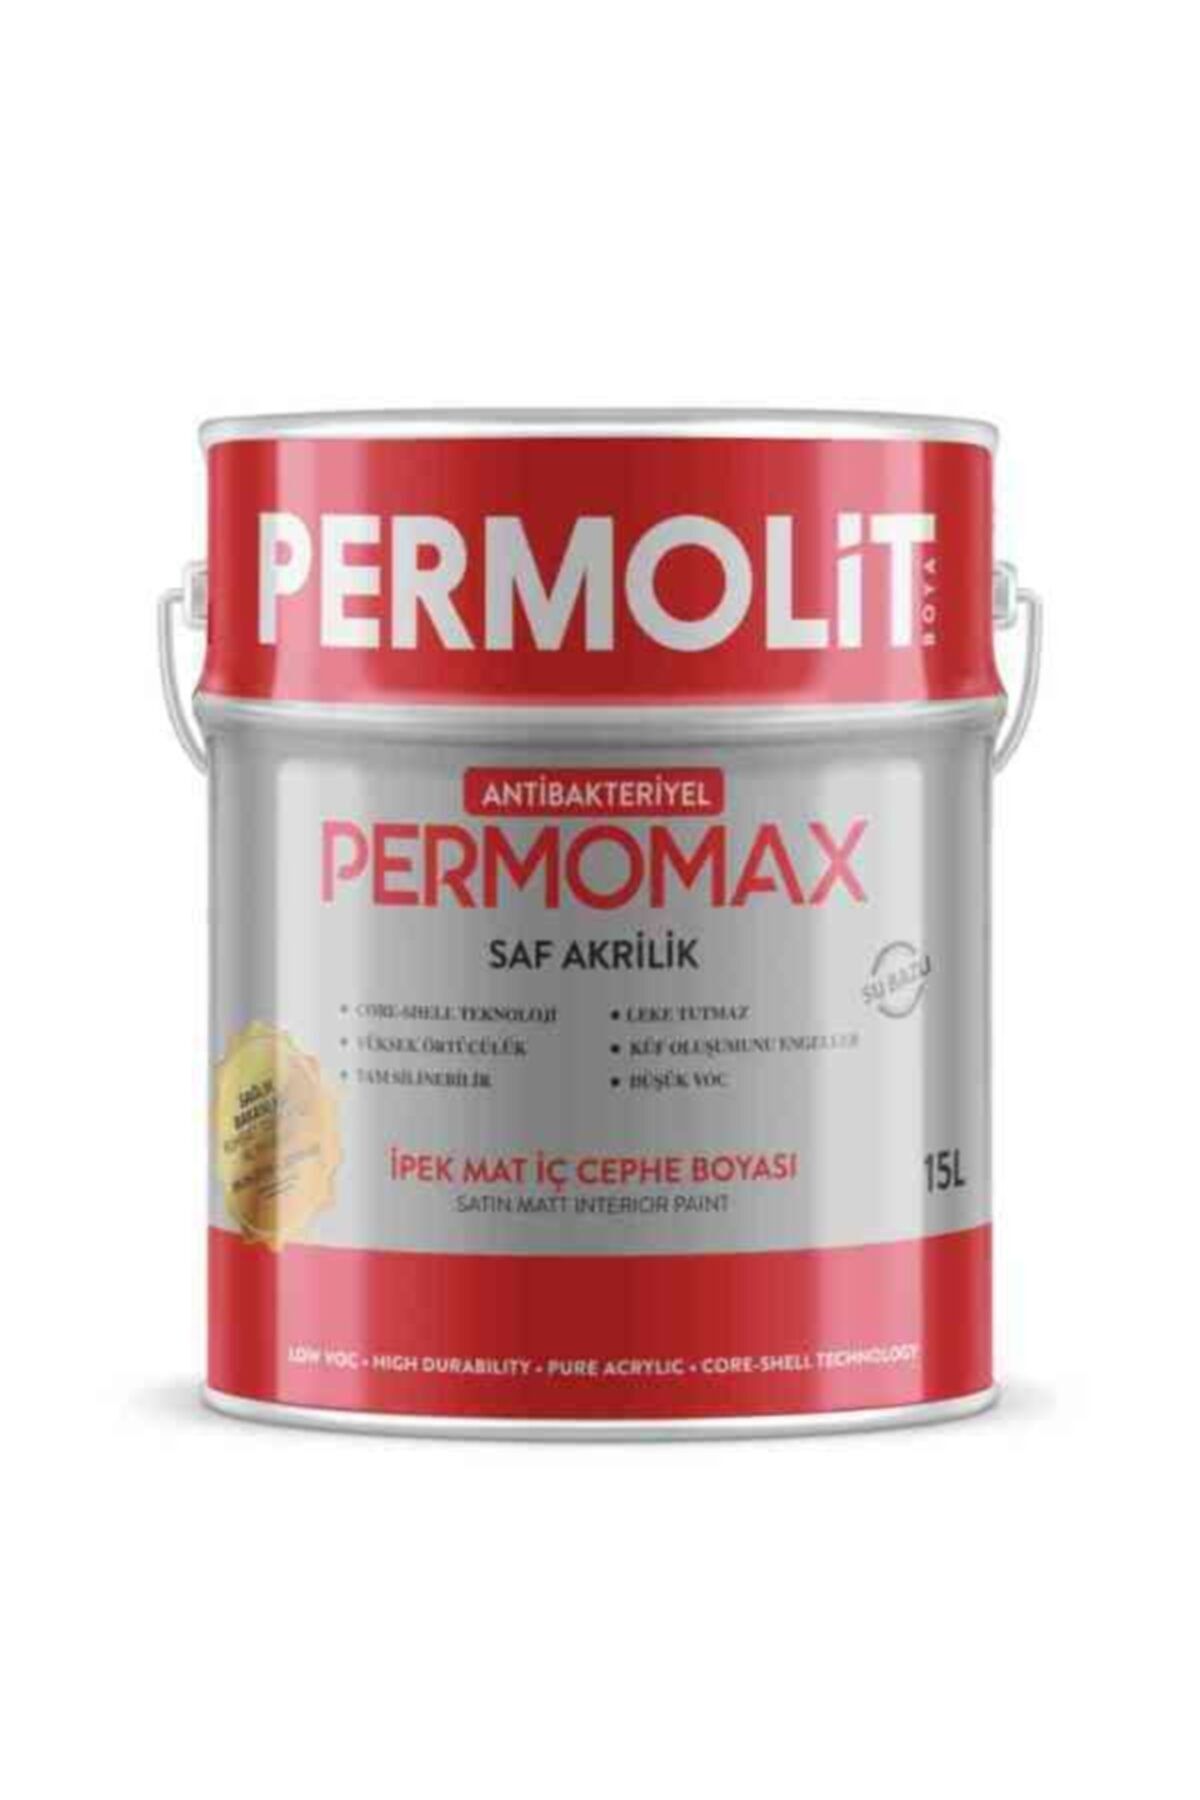 Permolit Permomax Antibakteriyel Ipek Mat Iç Cephe Boyası 3,5kg - Buz Beyazı